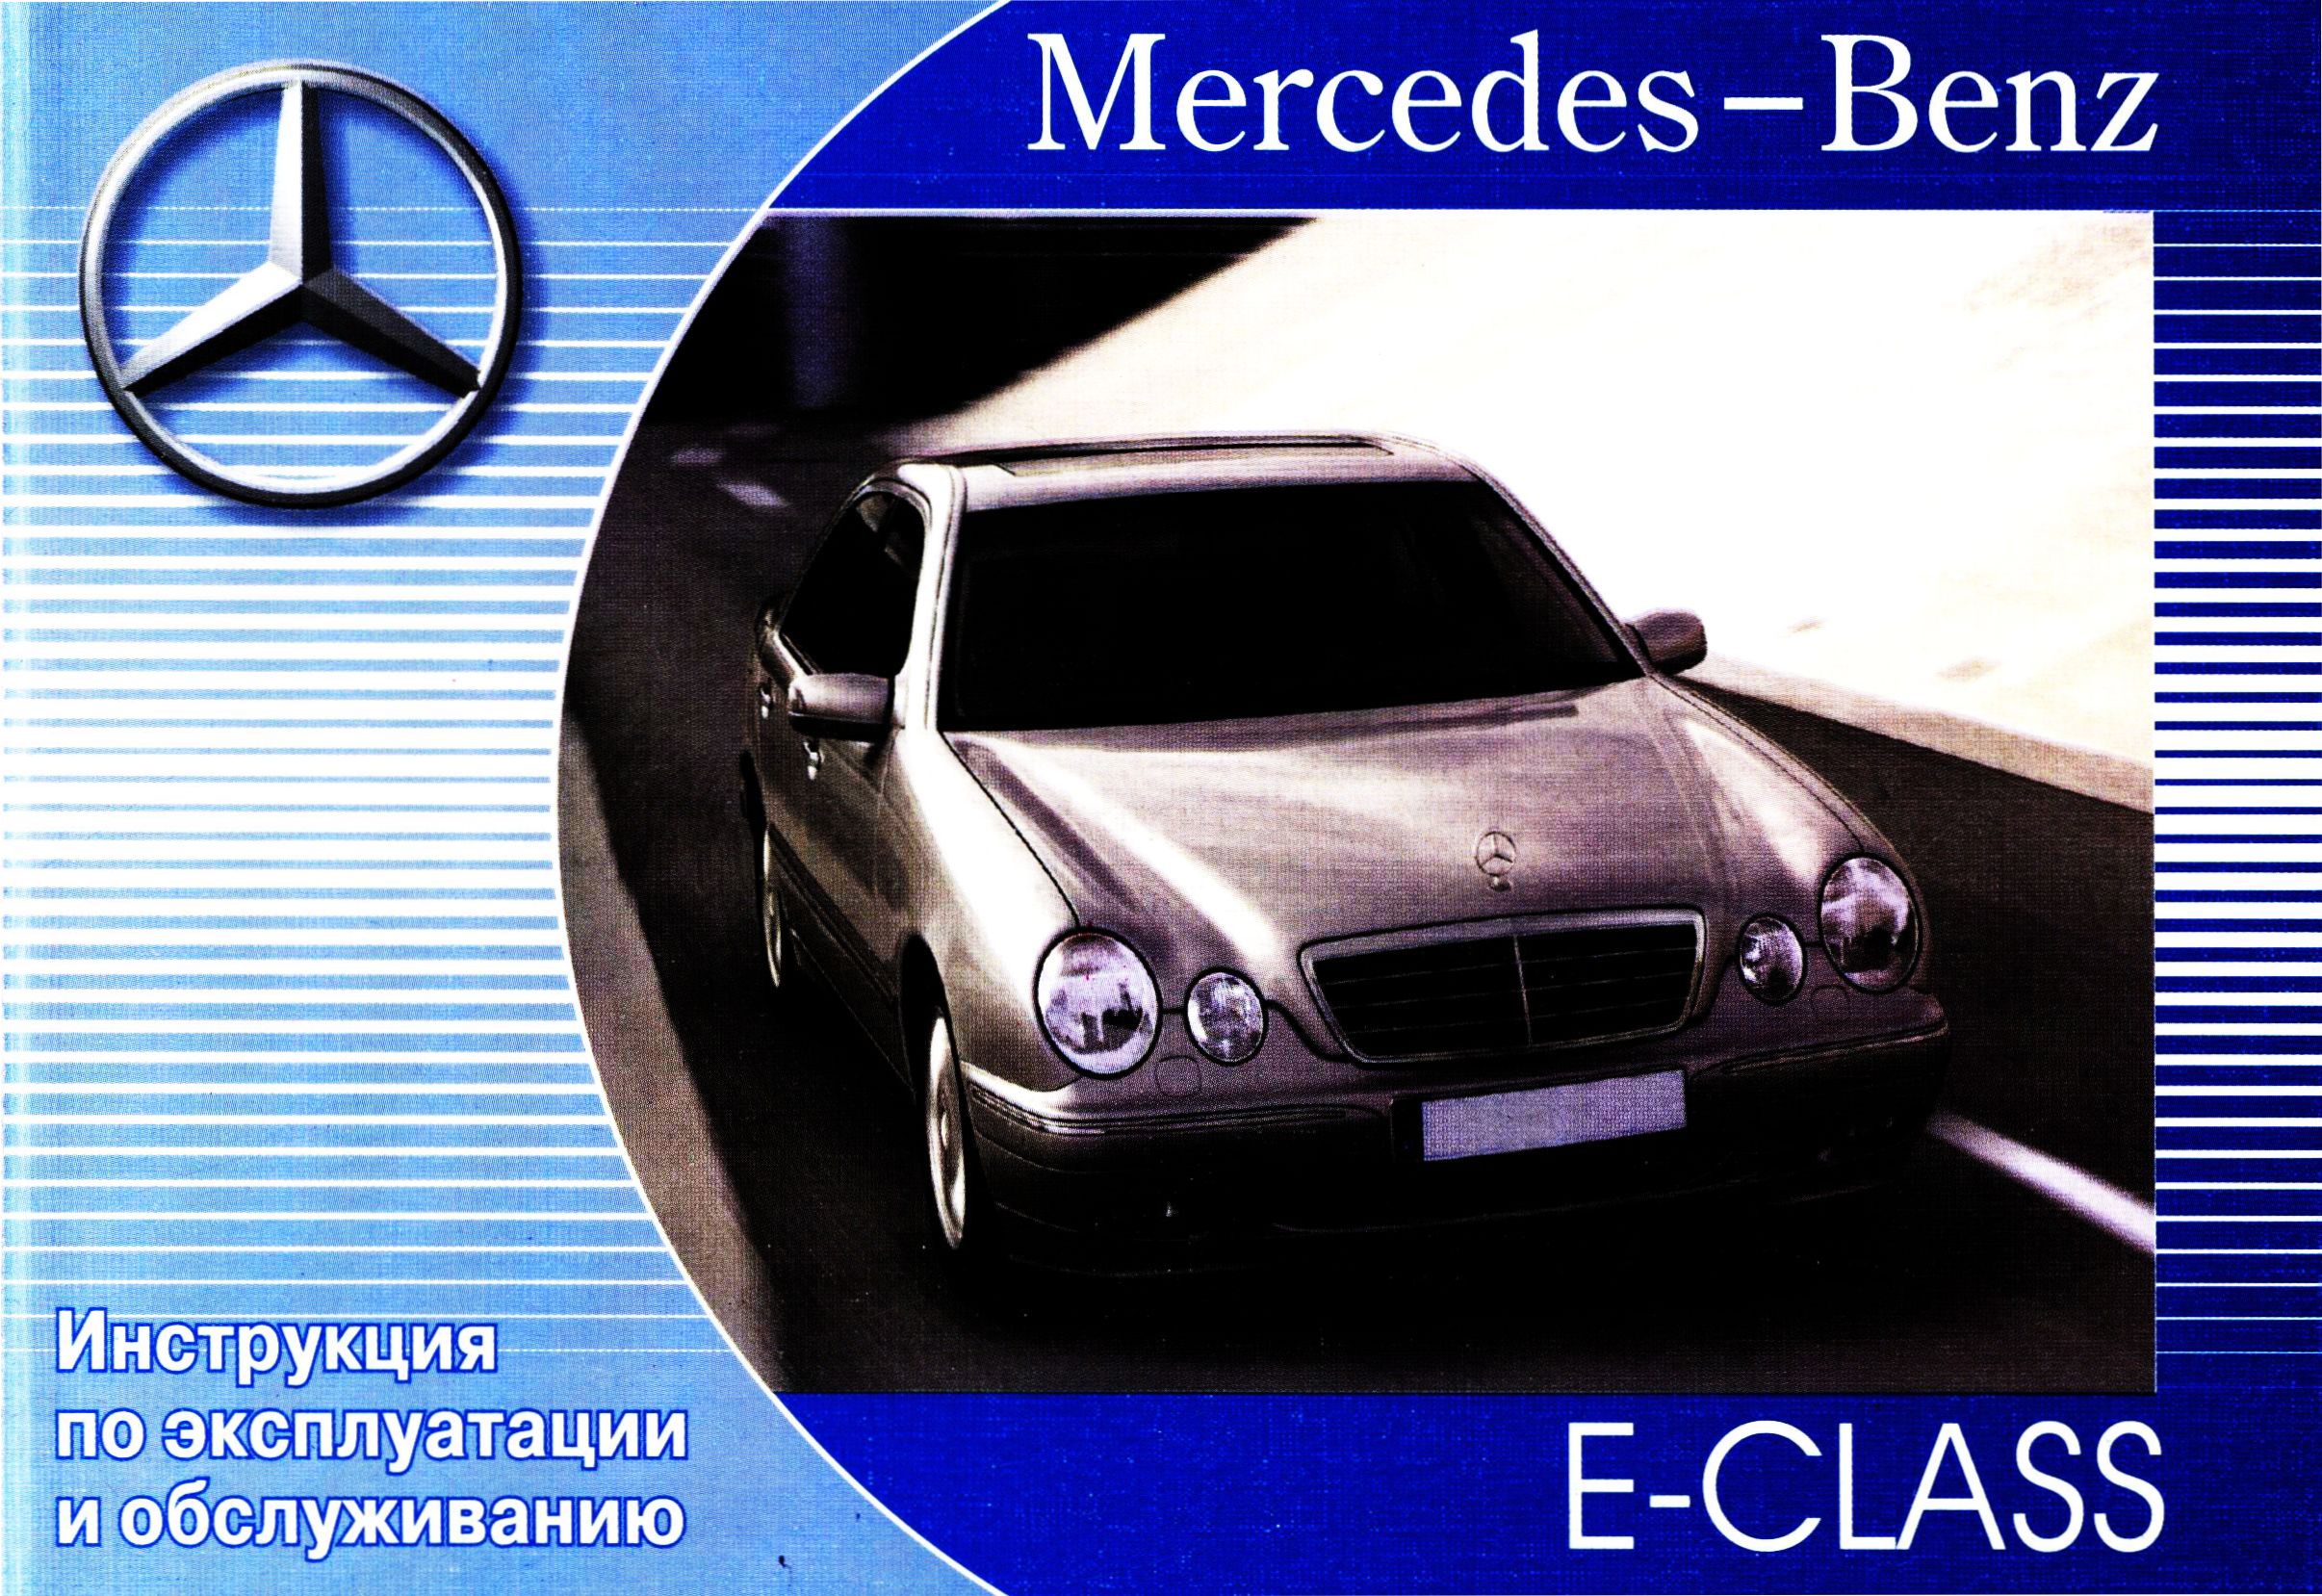 MERCEDES-BENZ E Класс (W210) 1995-2002 г. Пособие по эксплуатации и техническому обслуживанию